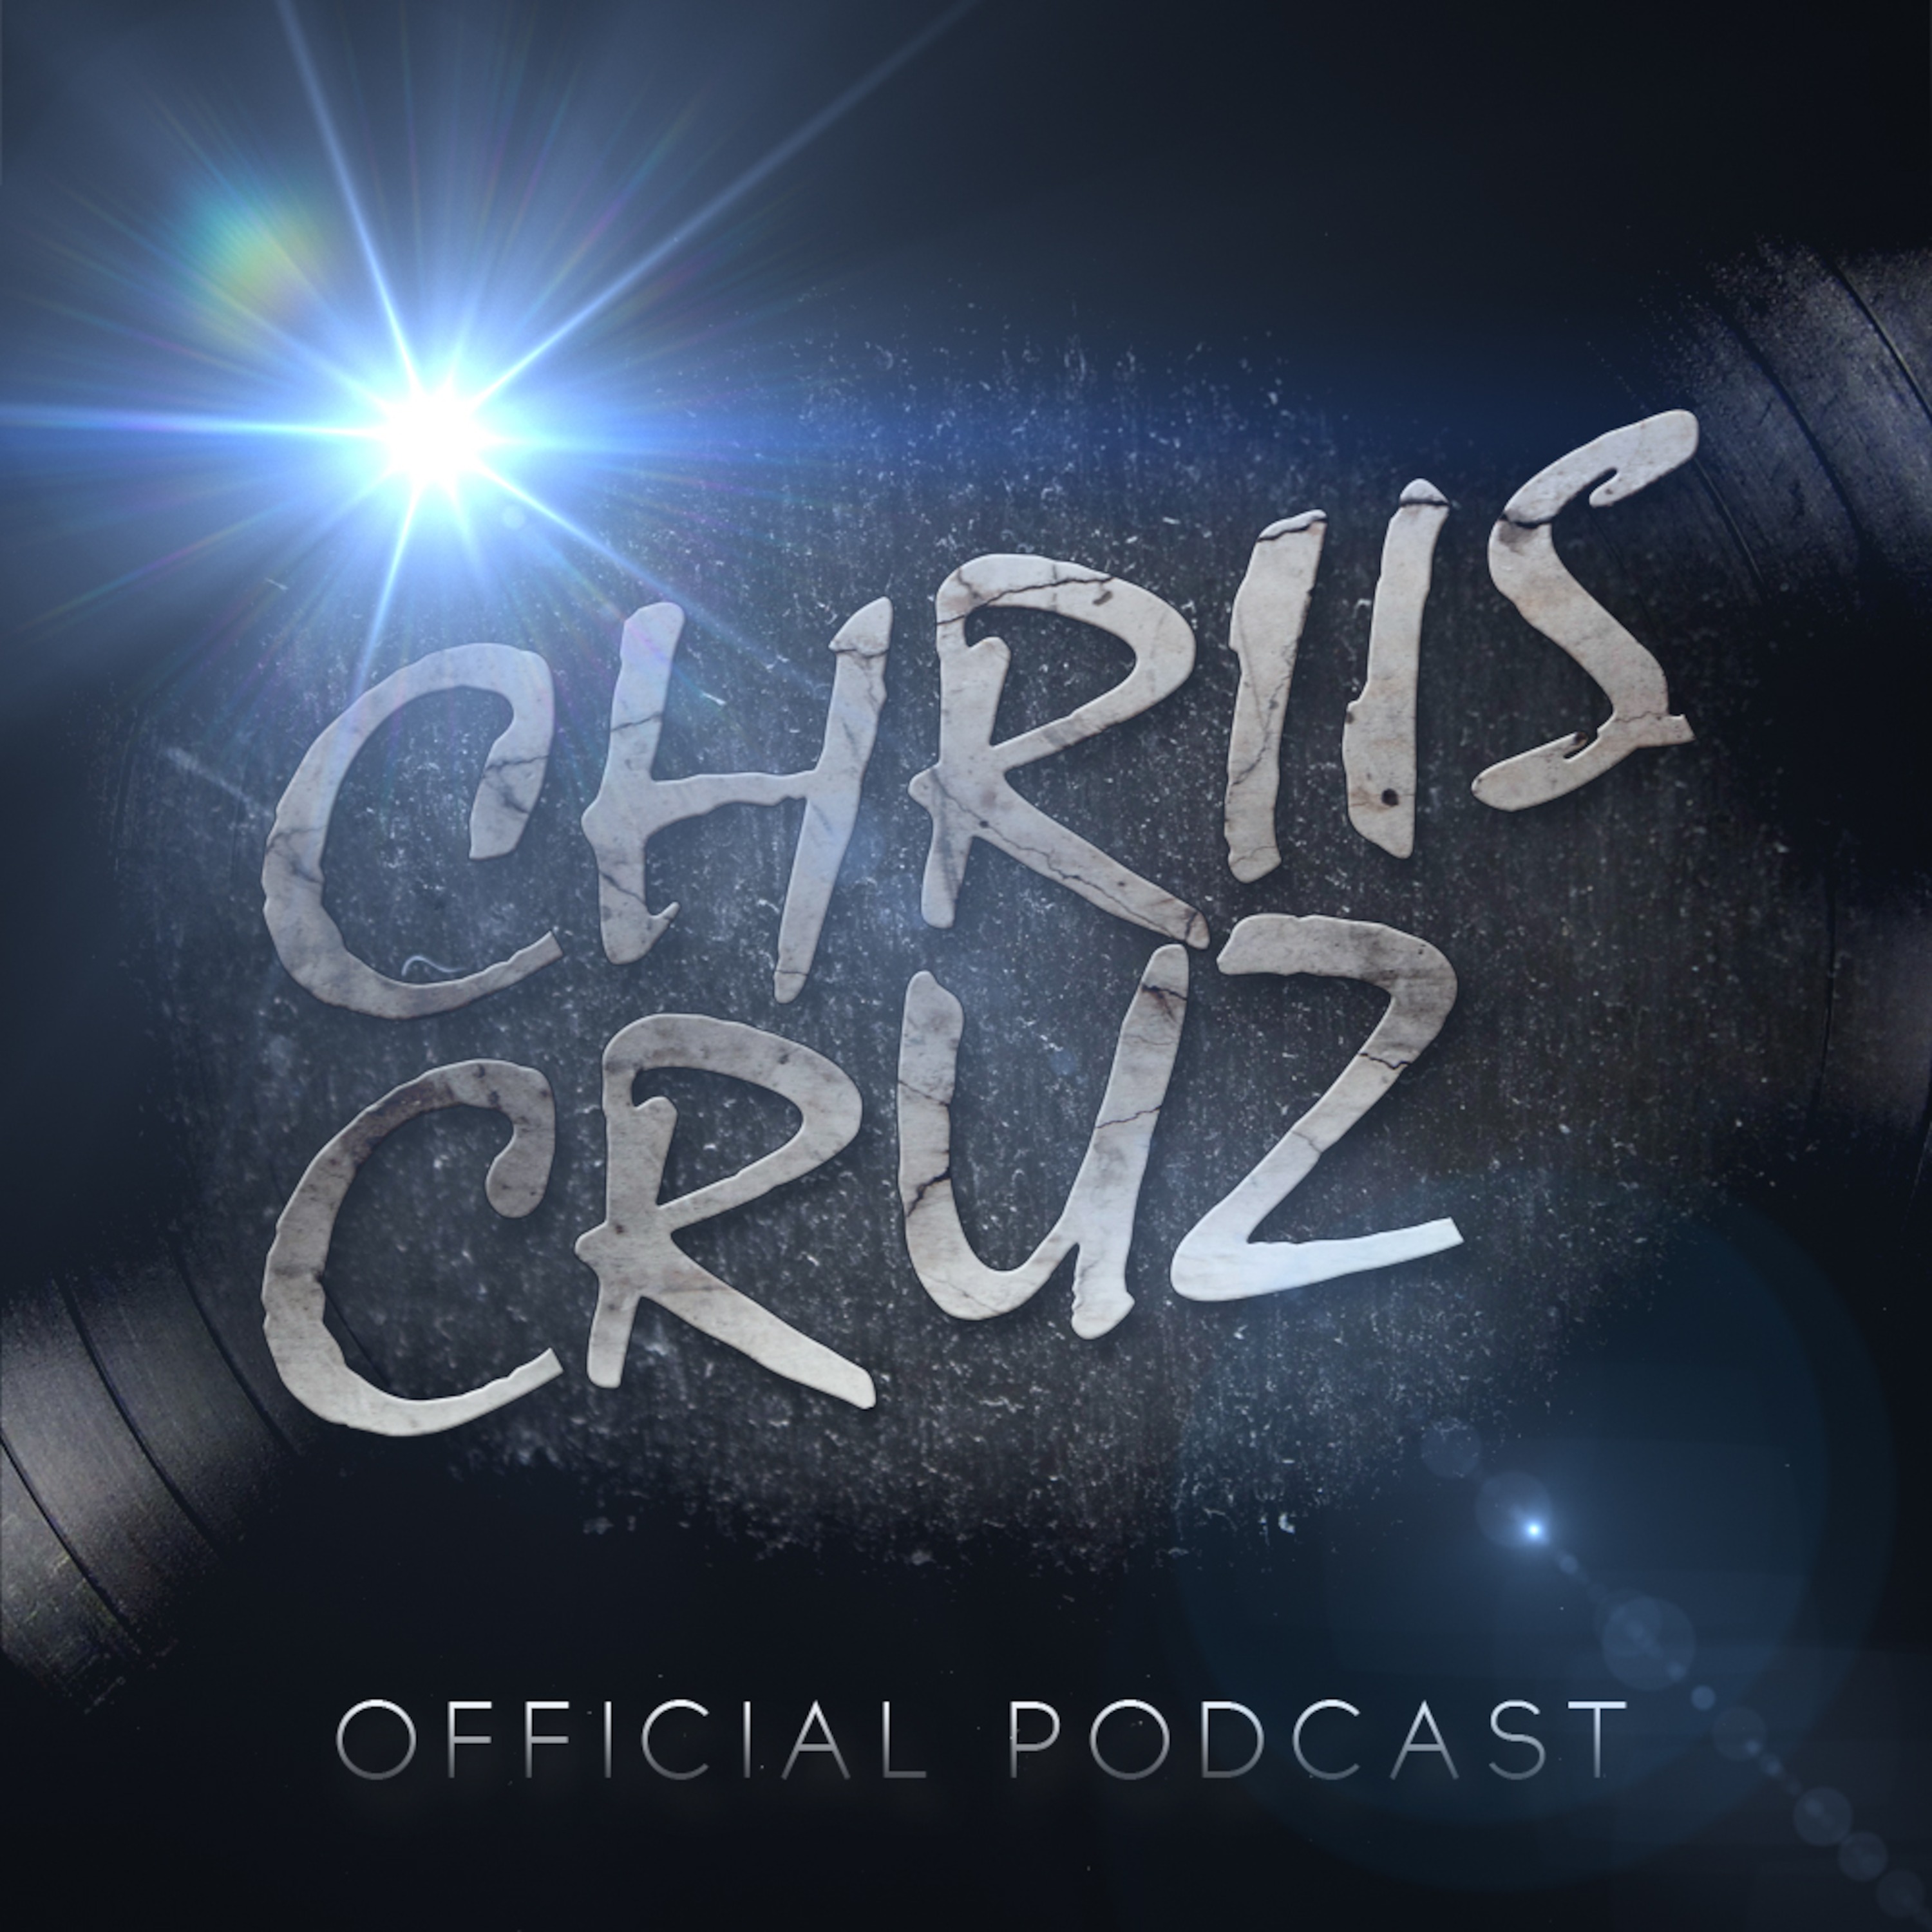 Chriis Cruz Official Podcast